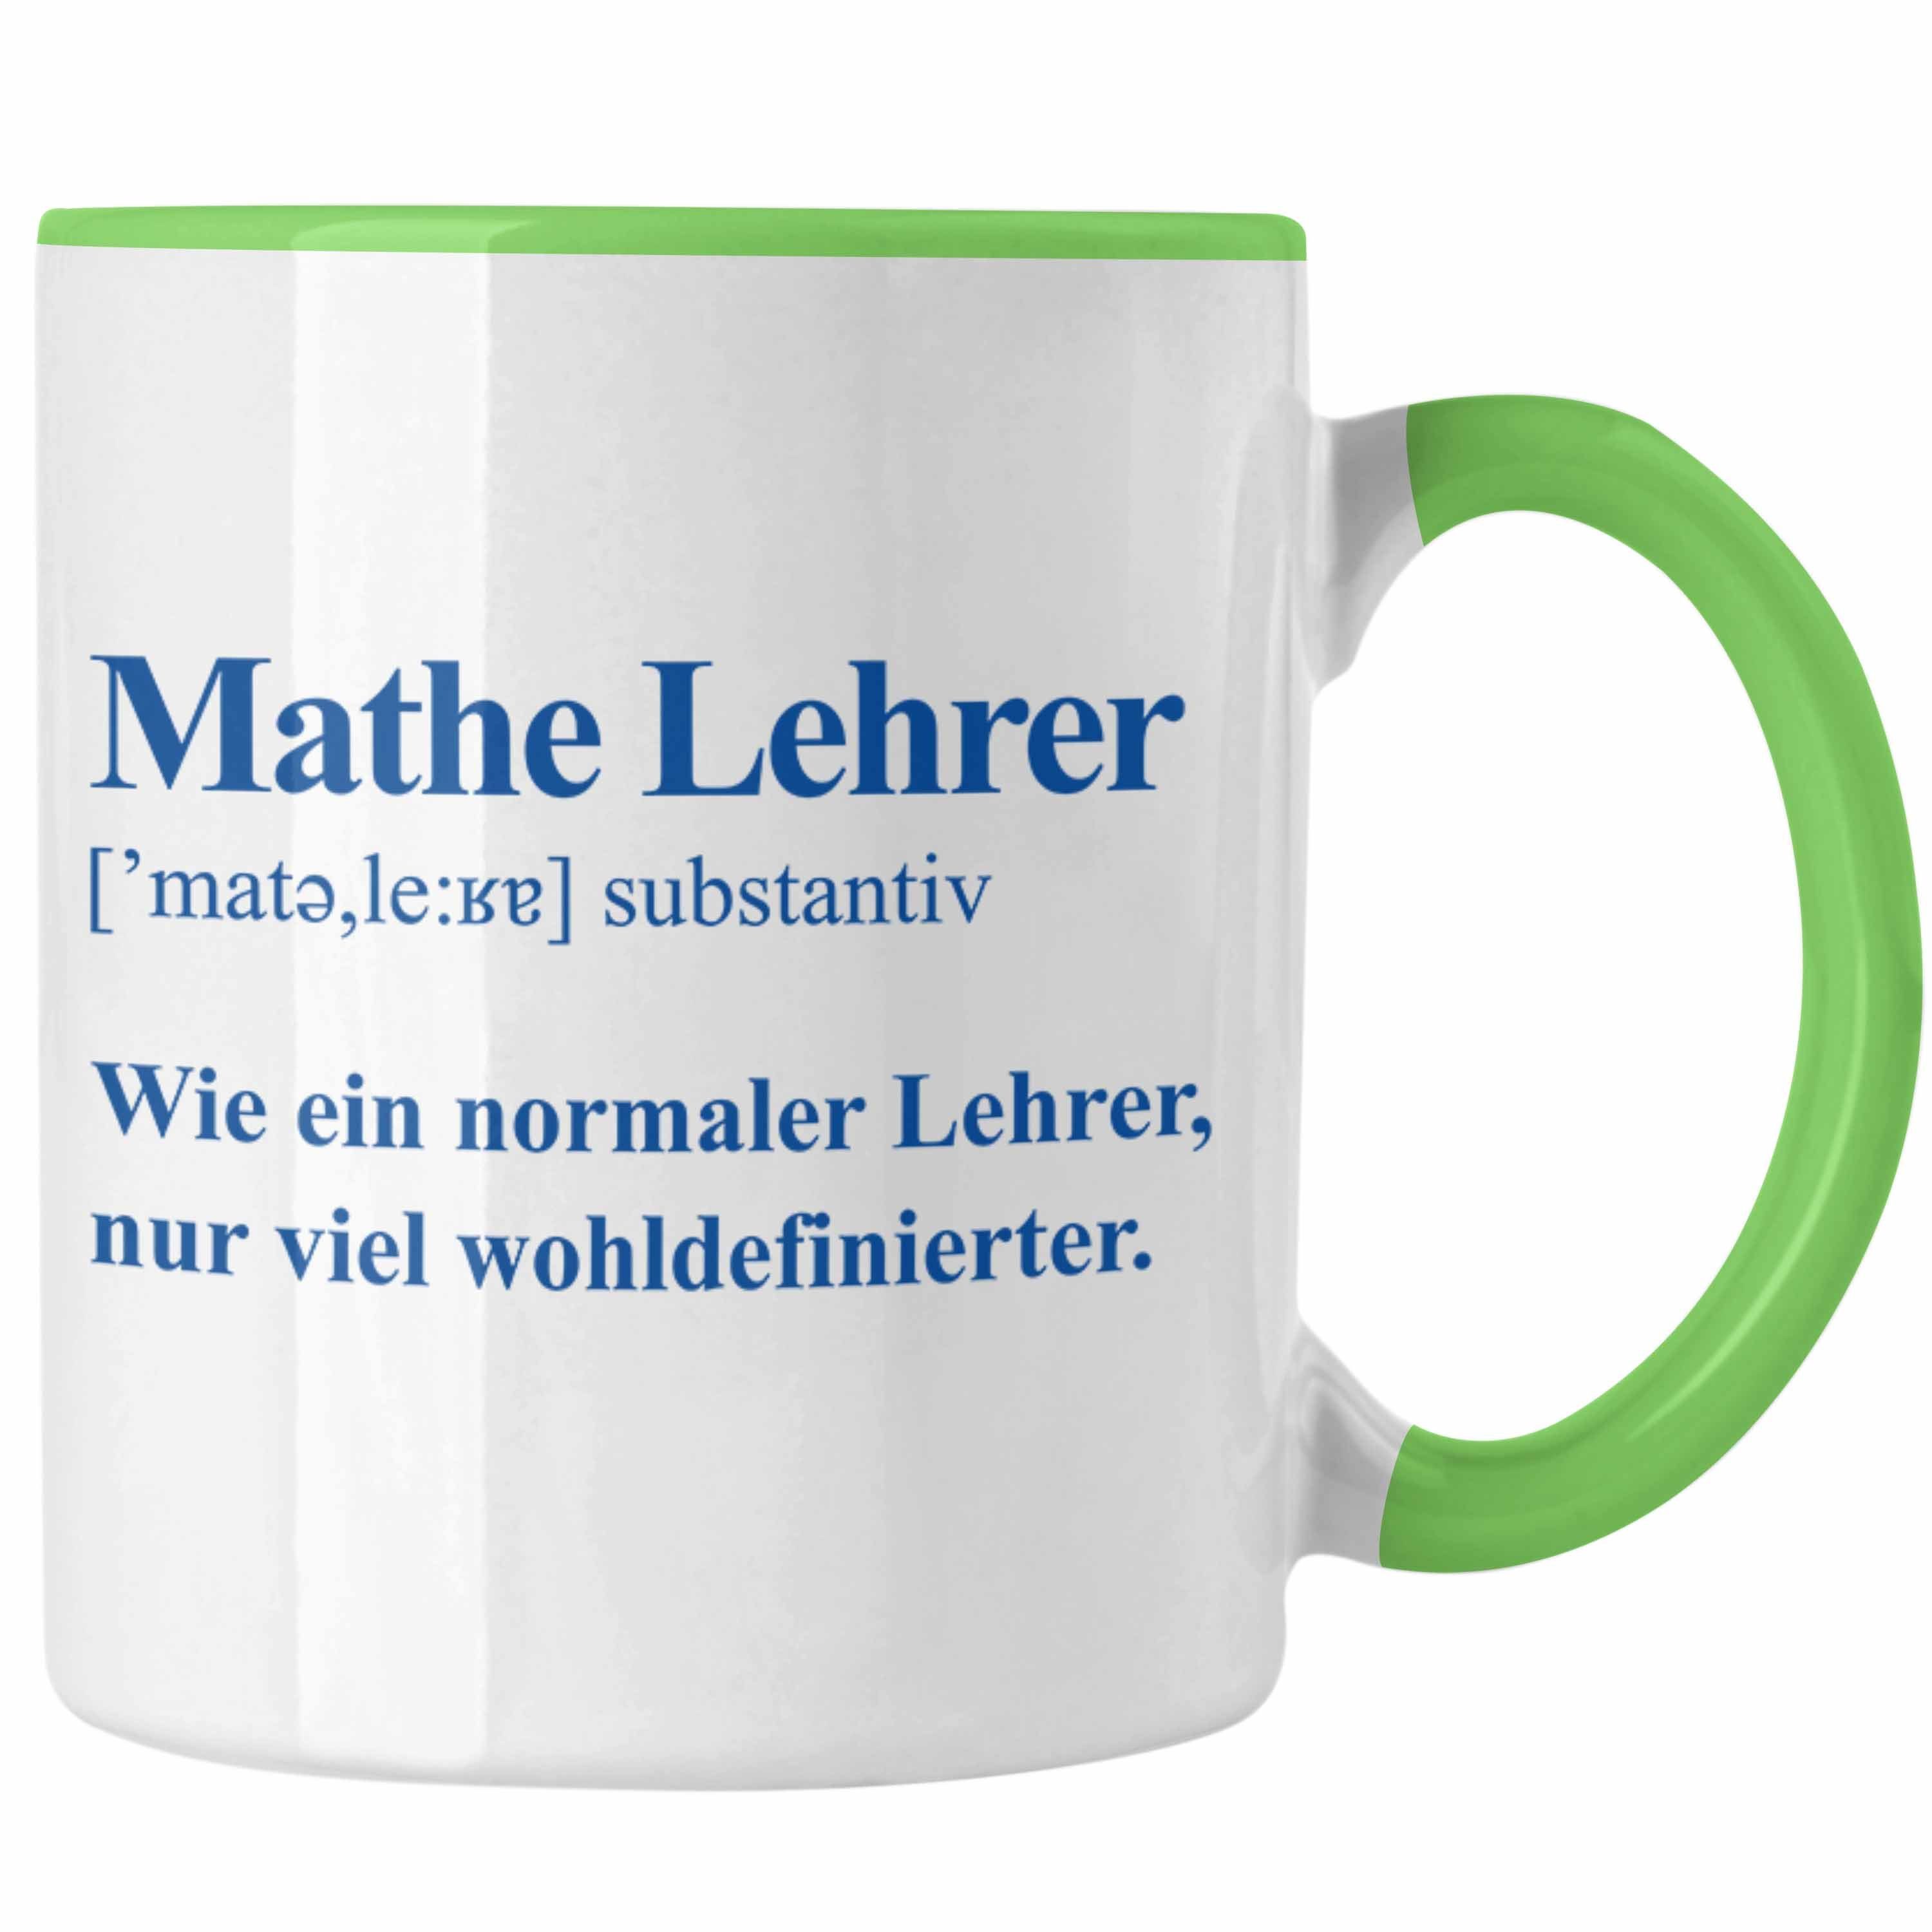 Trendation Tasse Trendation - Mathelehrer Tasse Mathematiker Tassen mit Spruch Lustig Kaffeetasse Geschenk Mathe Lehrer Grün